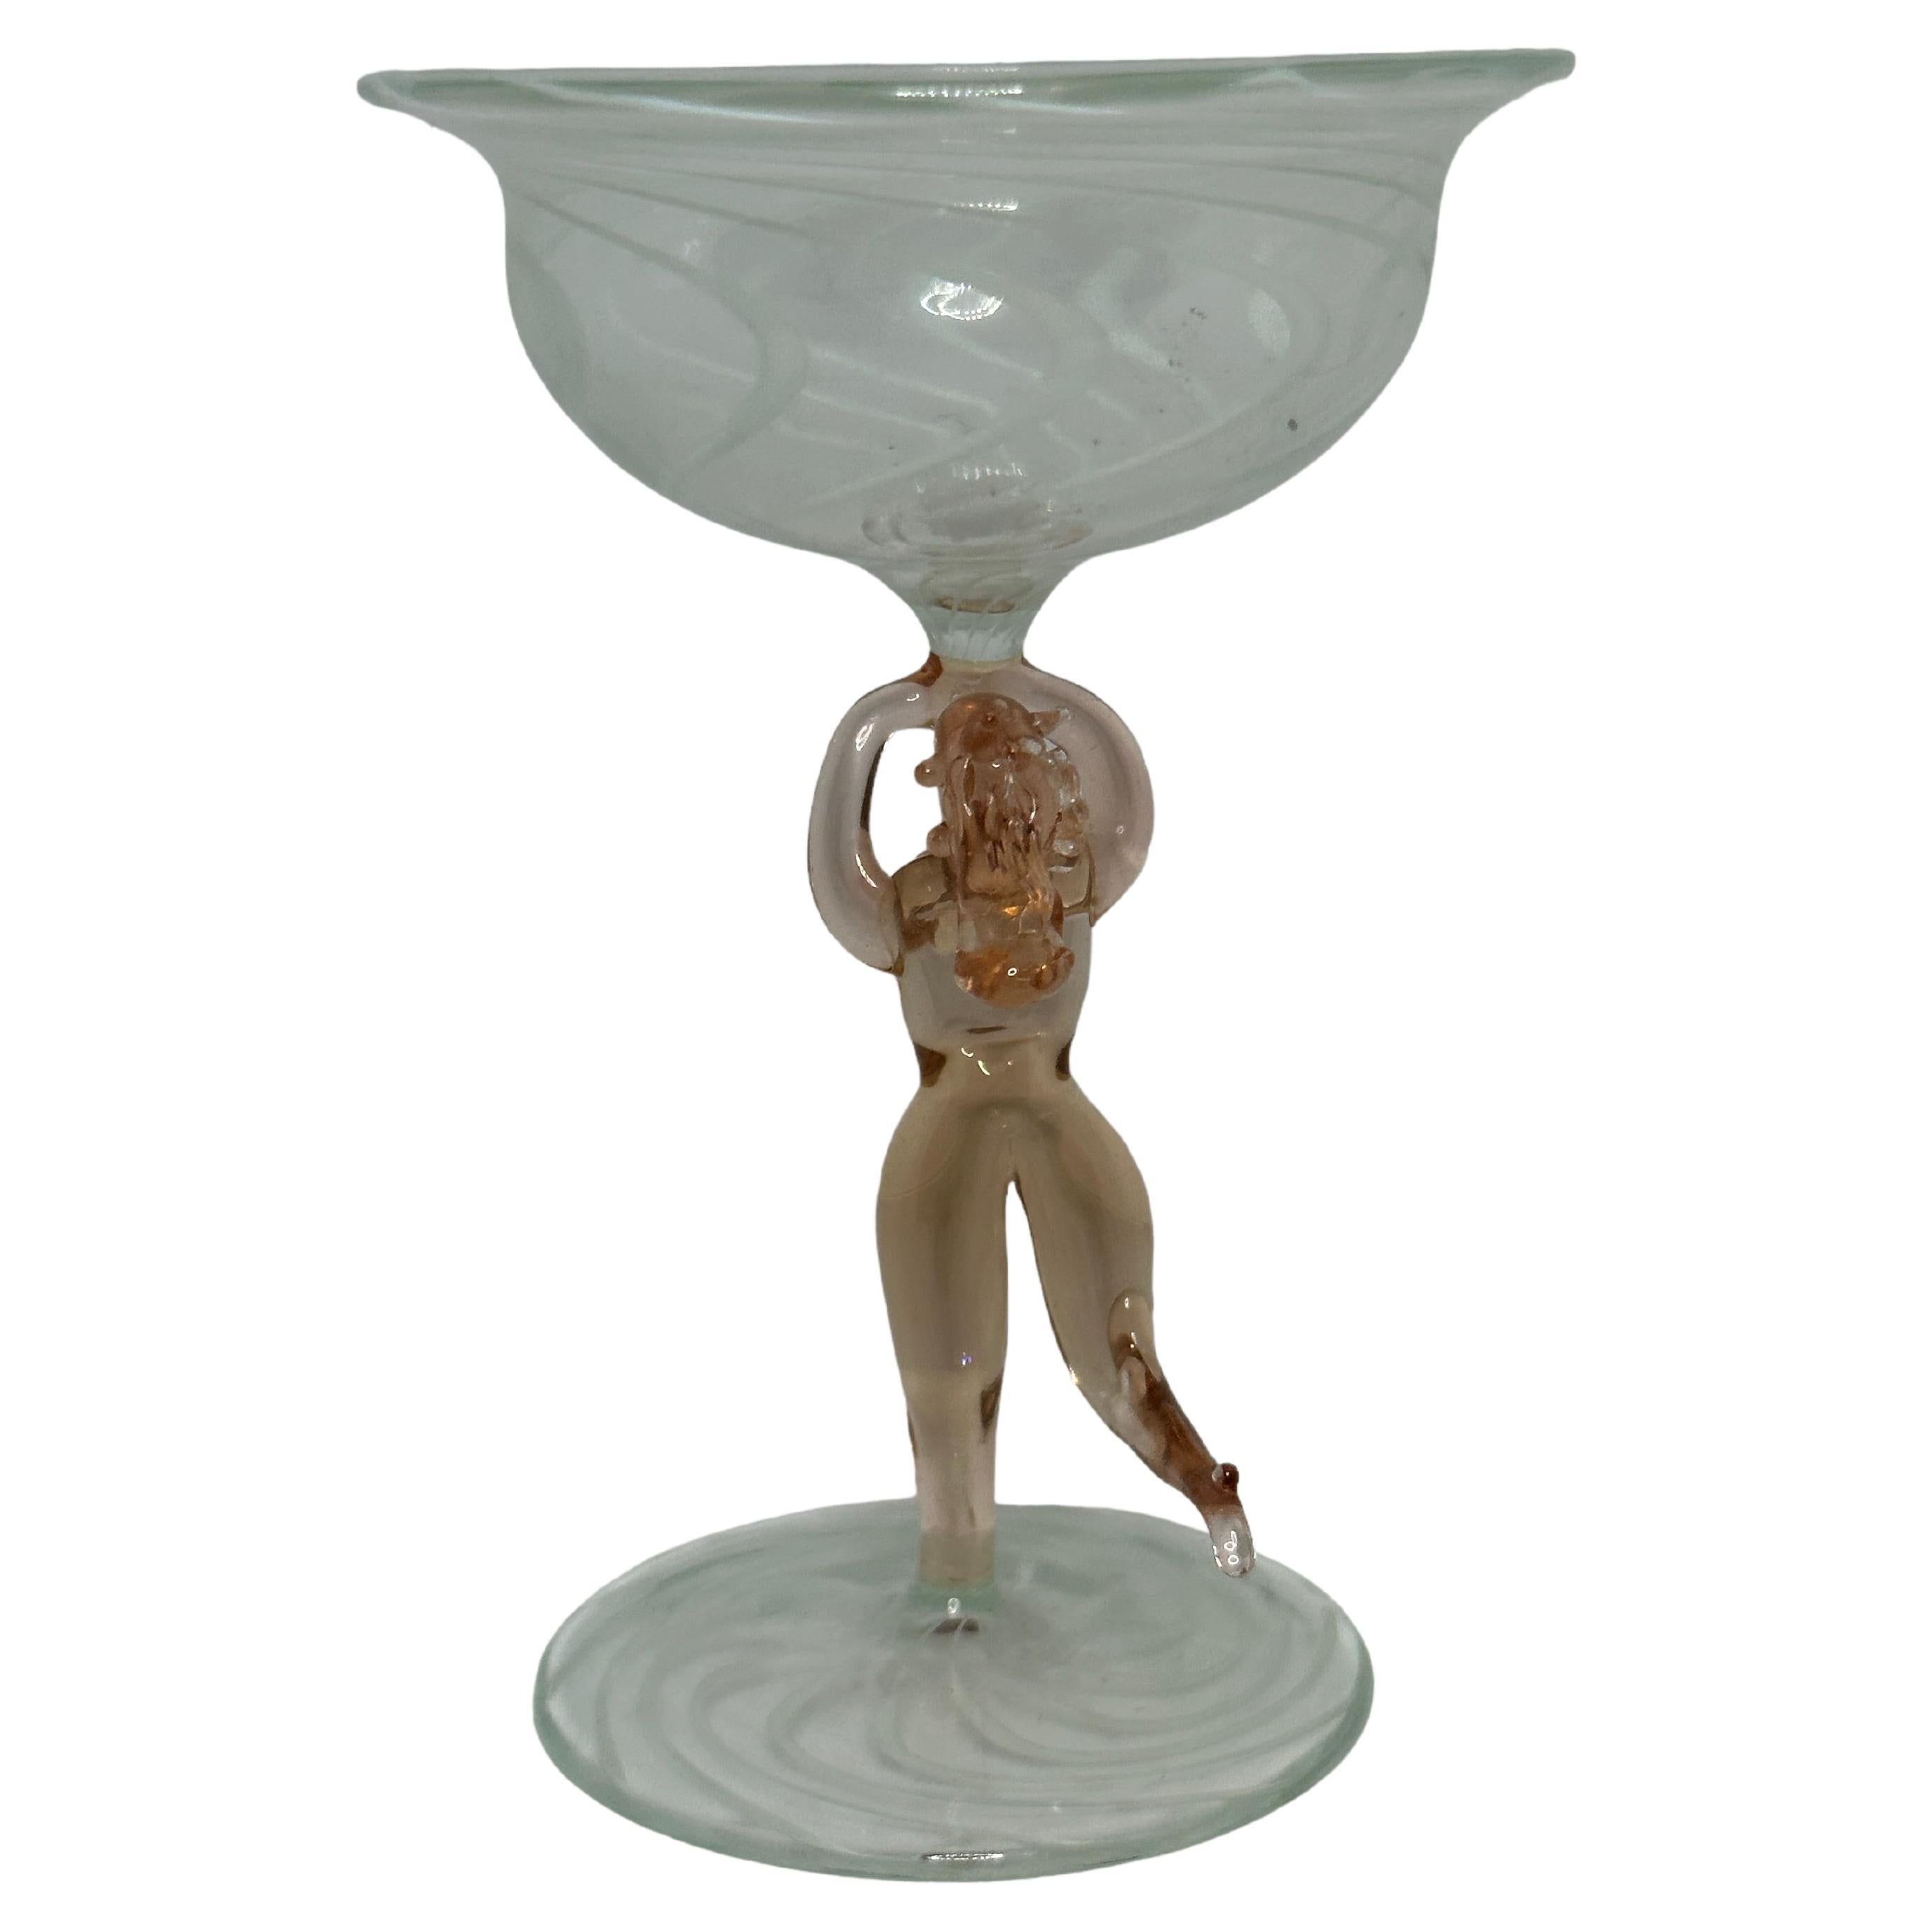 Dies ist ein wunderschönes, einfaches Vintage-Cocktailglas mit Stiel aus Österreich. Es hat einen nackten Frauenschaft und ist im Bimini-Stil gehalten. Das klare Glas hat ein wunderschönes Wirbelmuster, der Stiel zeigt eine nackte Dame in rosa